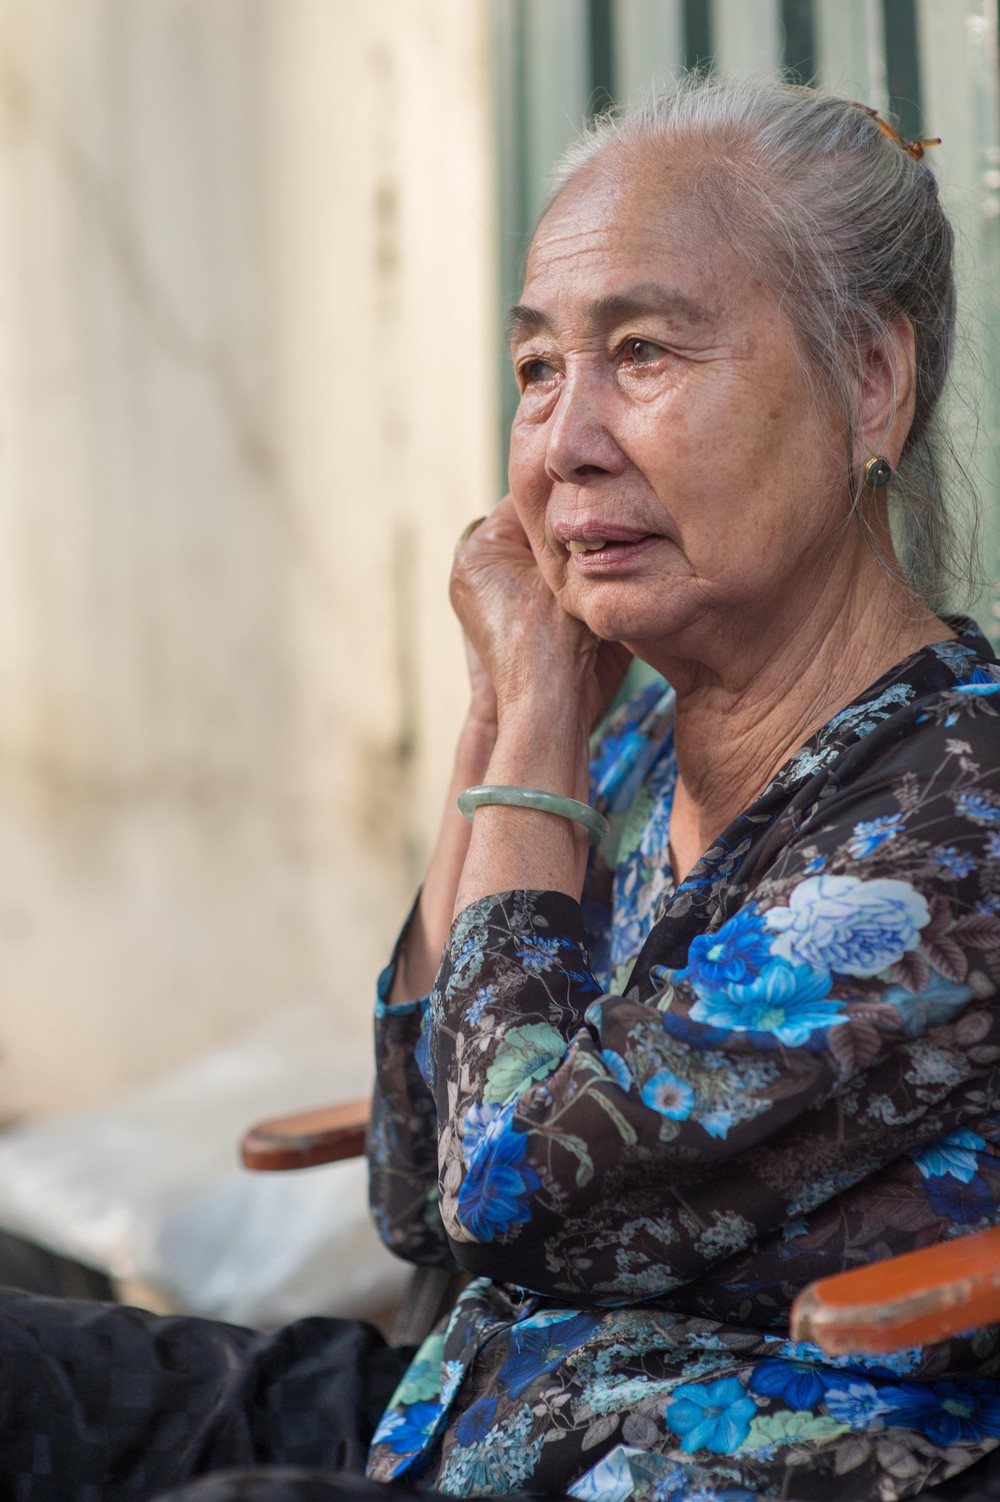 Triết lý sung sướng phụ nữ hiện đại nào cũng phải học từ cụ bà 81 tuổi bán hoa gói lá 70 năm ở góc chợ Đồng Xuân - Ảnh 18.